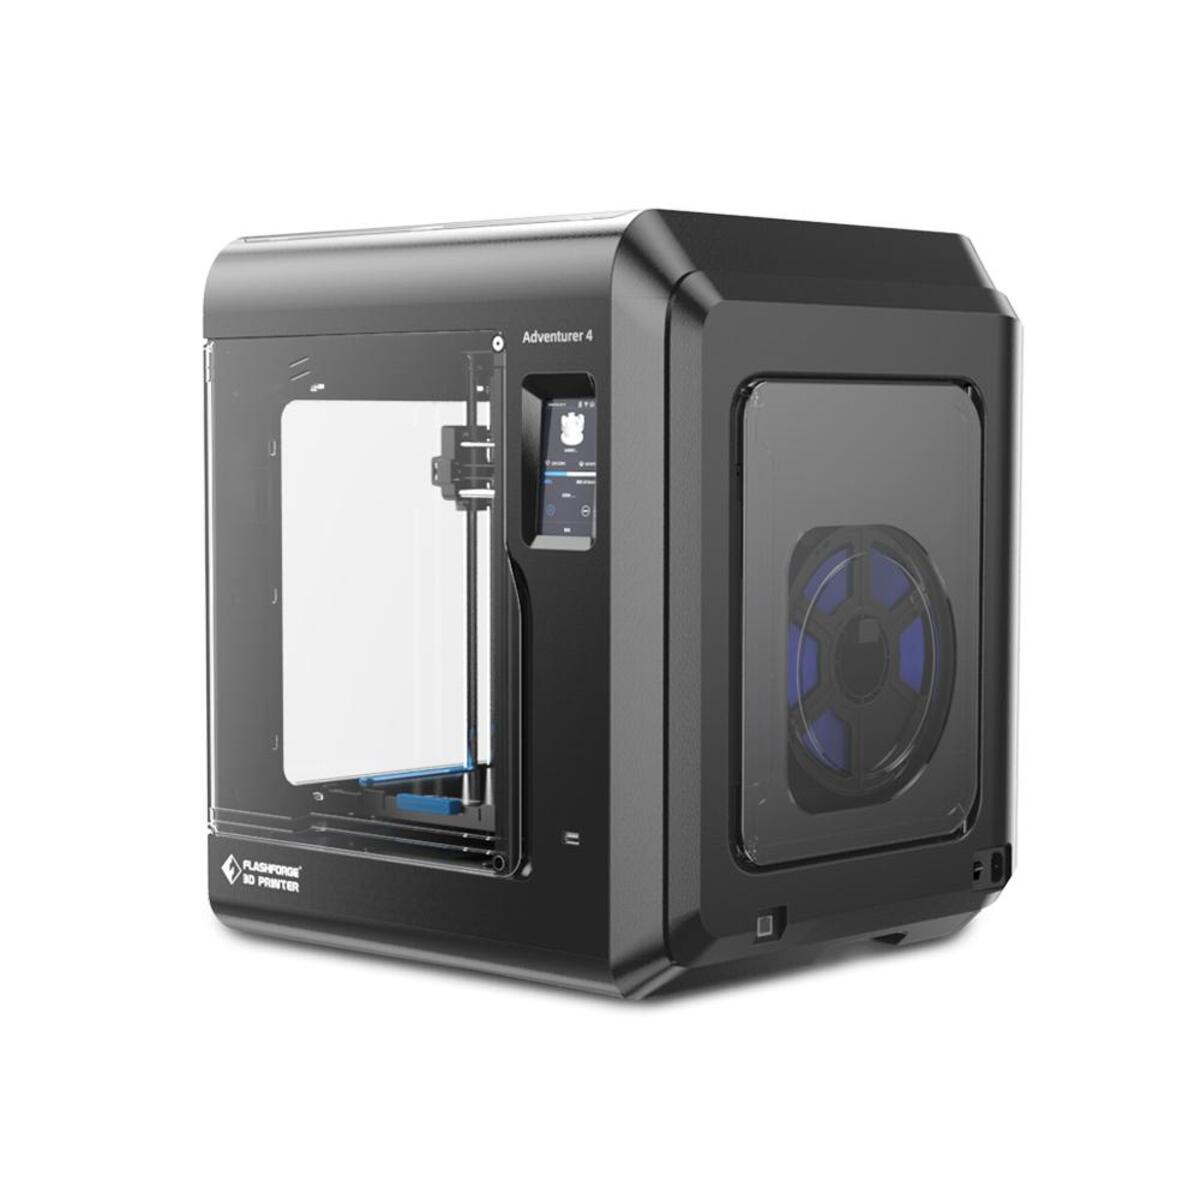 FLASCHFORGE Adventurer 4 - FDM 3D Printer 3D Drucker